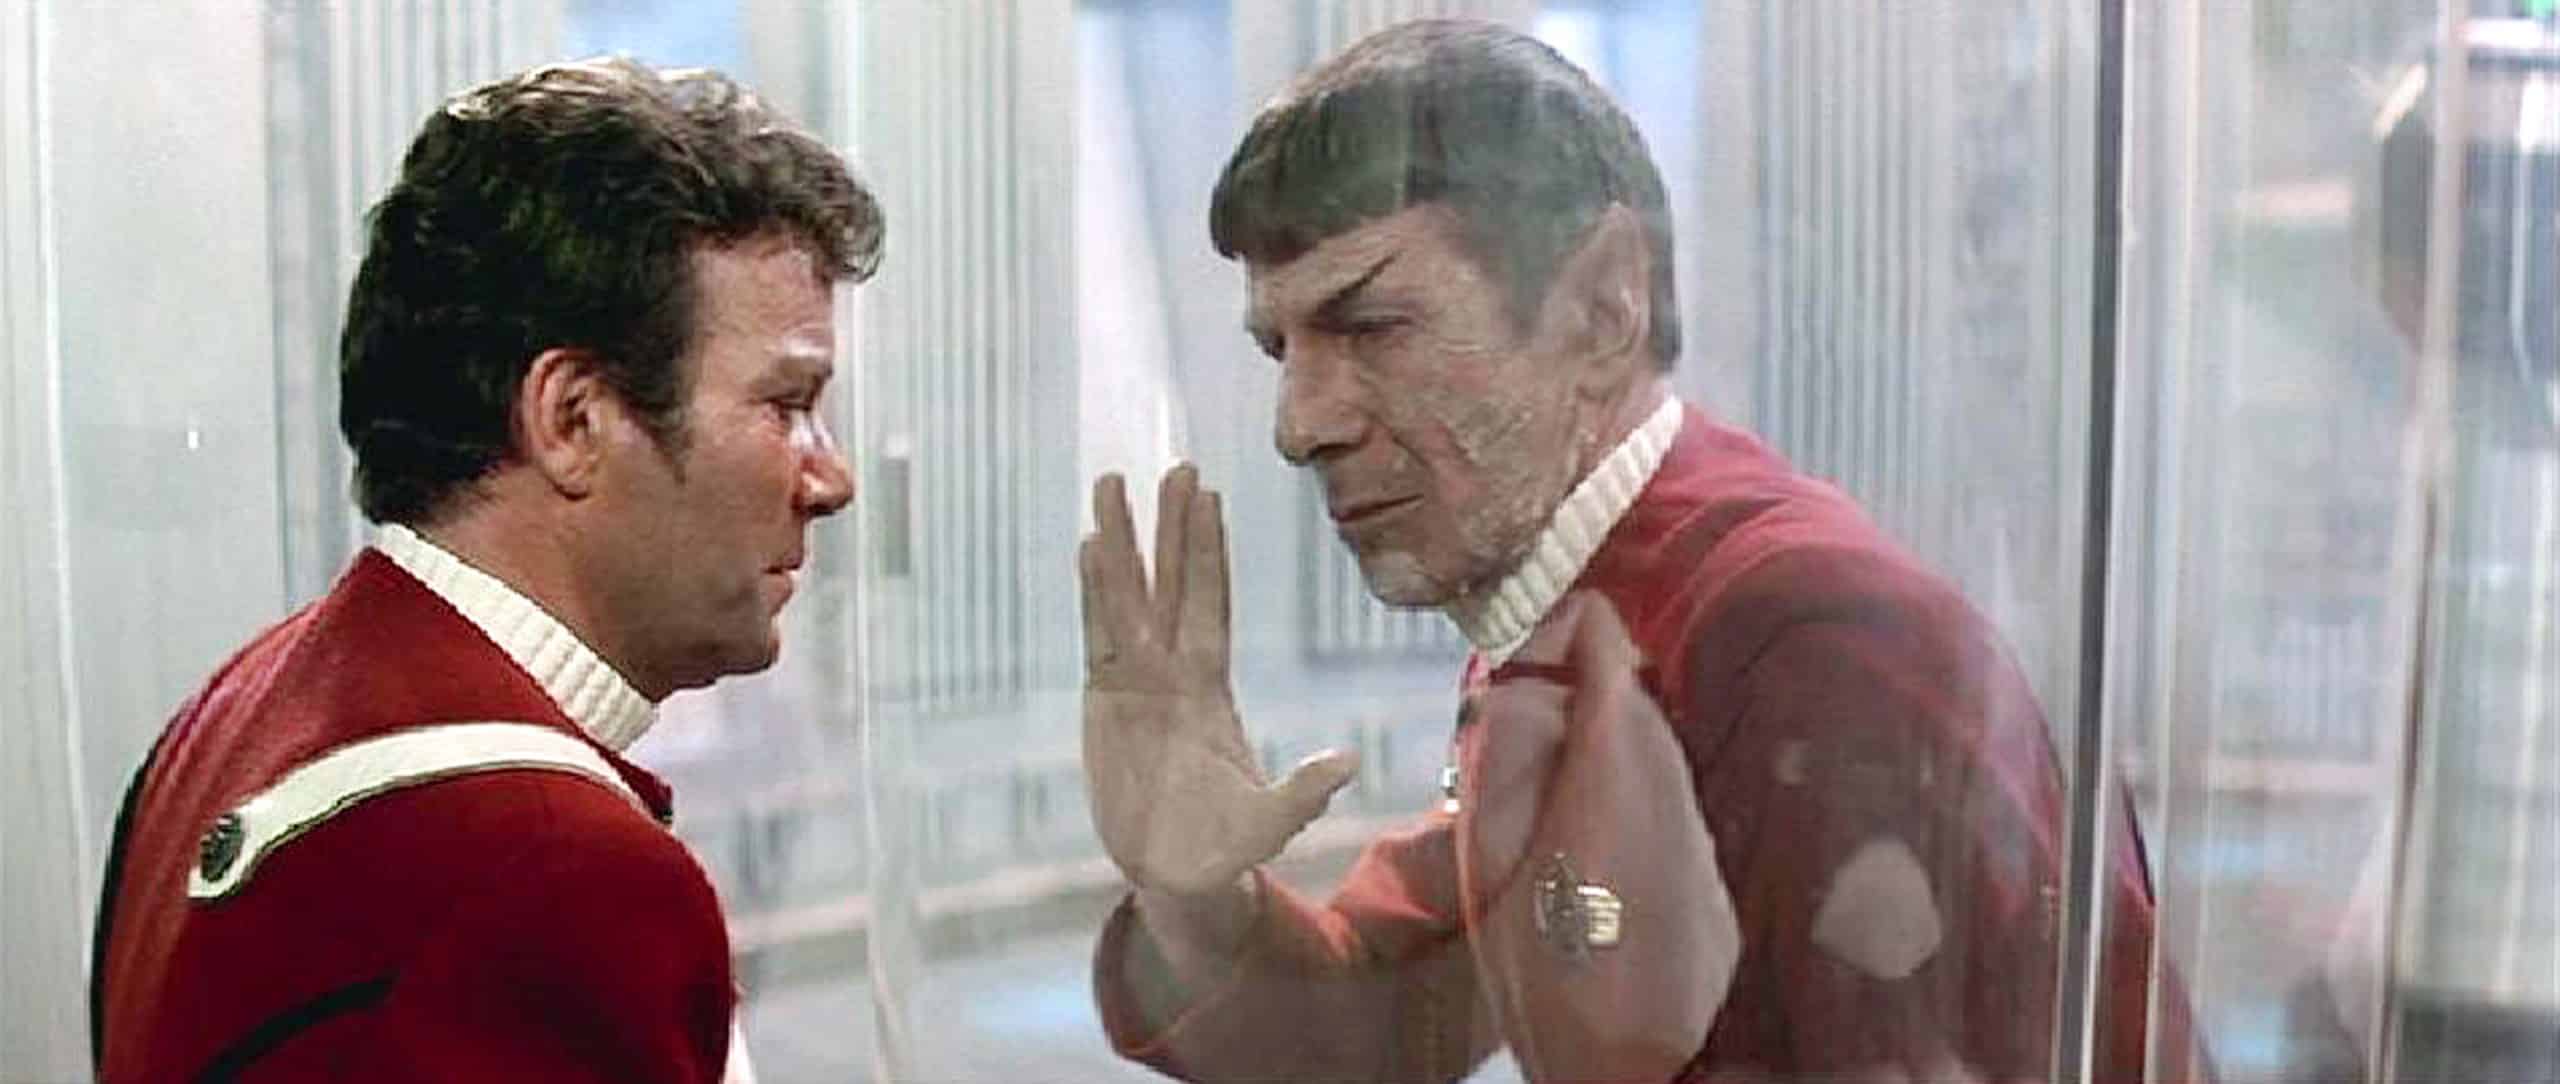 STAR TREK II: THE WRATH OF KHAN, William Shatner, Leonard Nimoy, 1982. Spock gives Kirk the Vulcan 'Live Long &amp; Prosper' salute